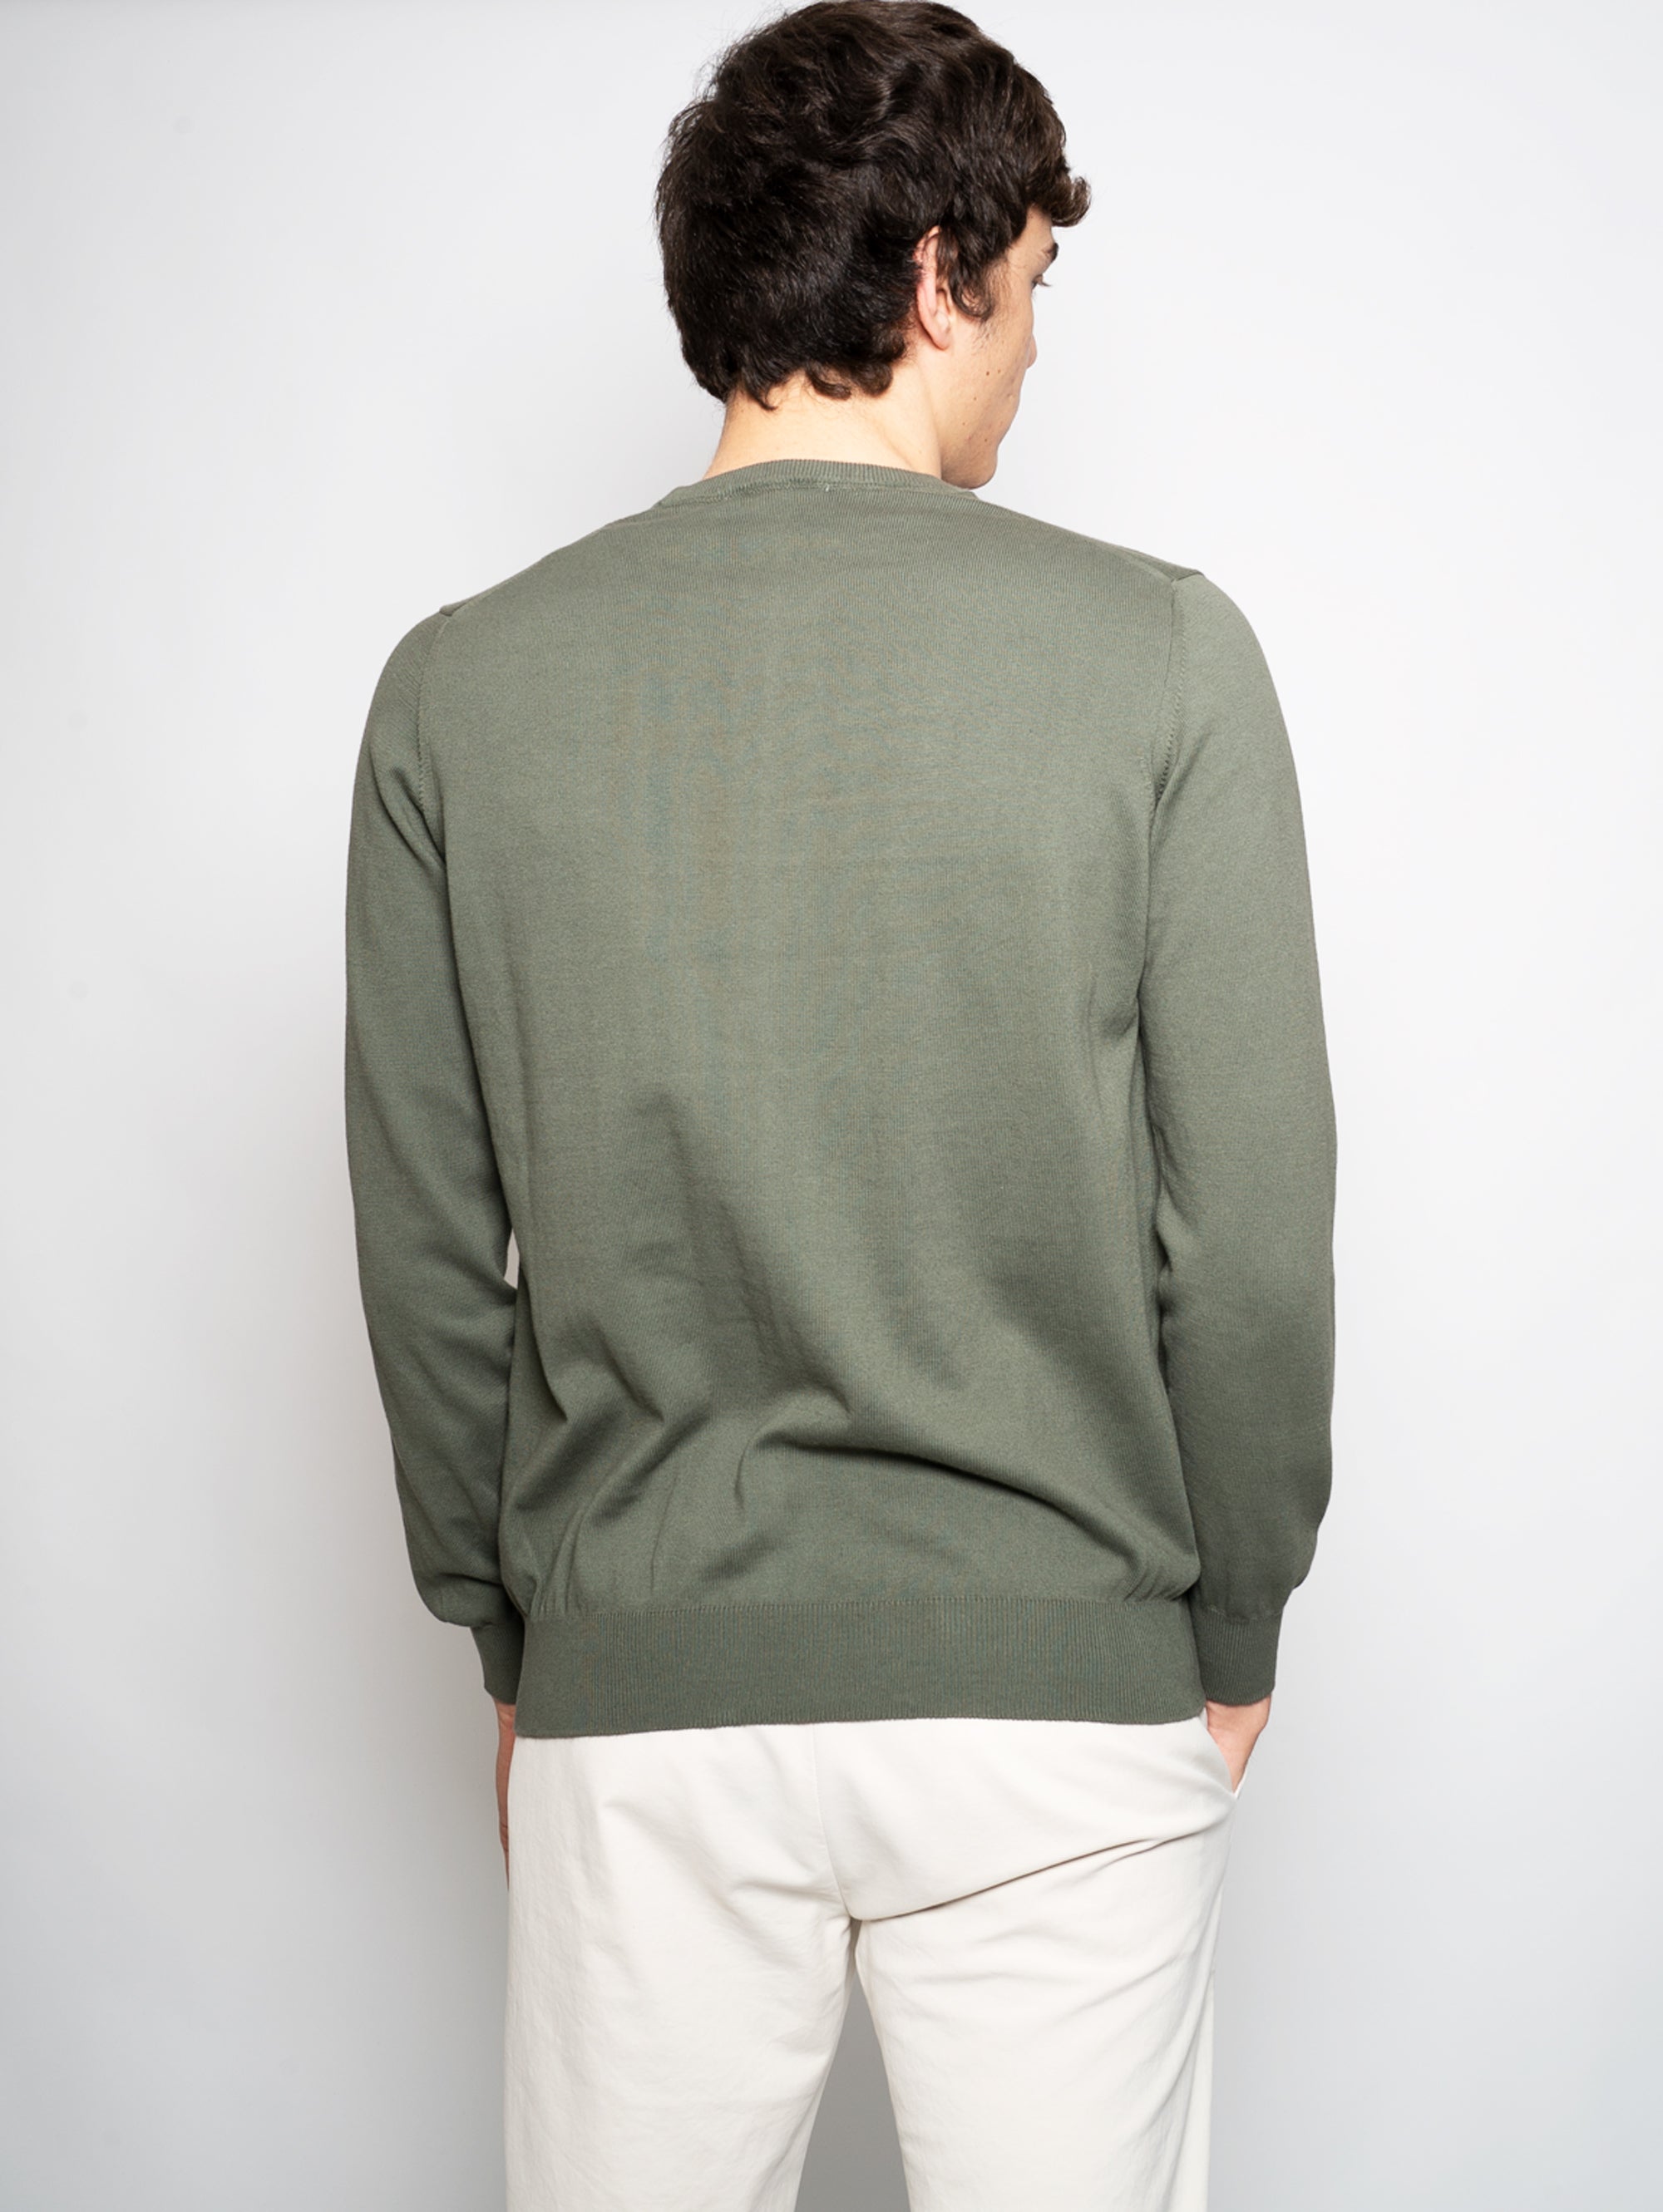 Pullover mit grünem Sweatshirtkragen